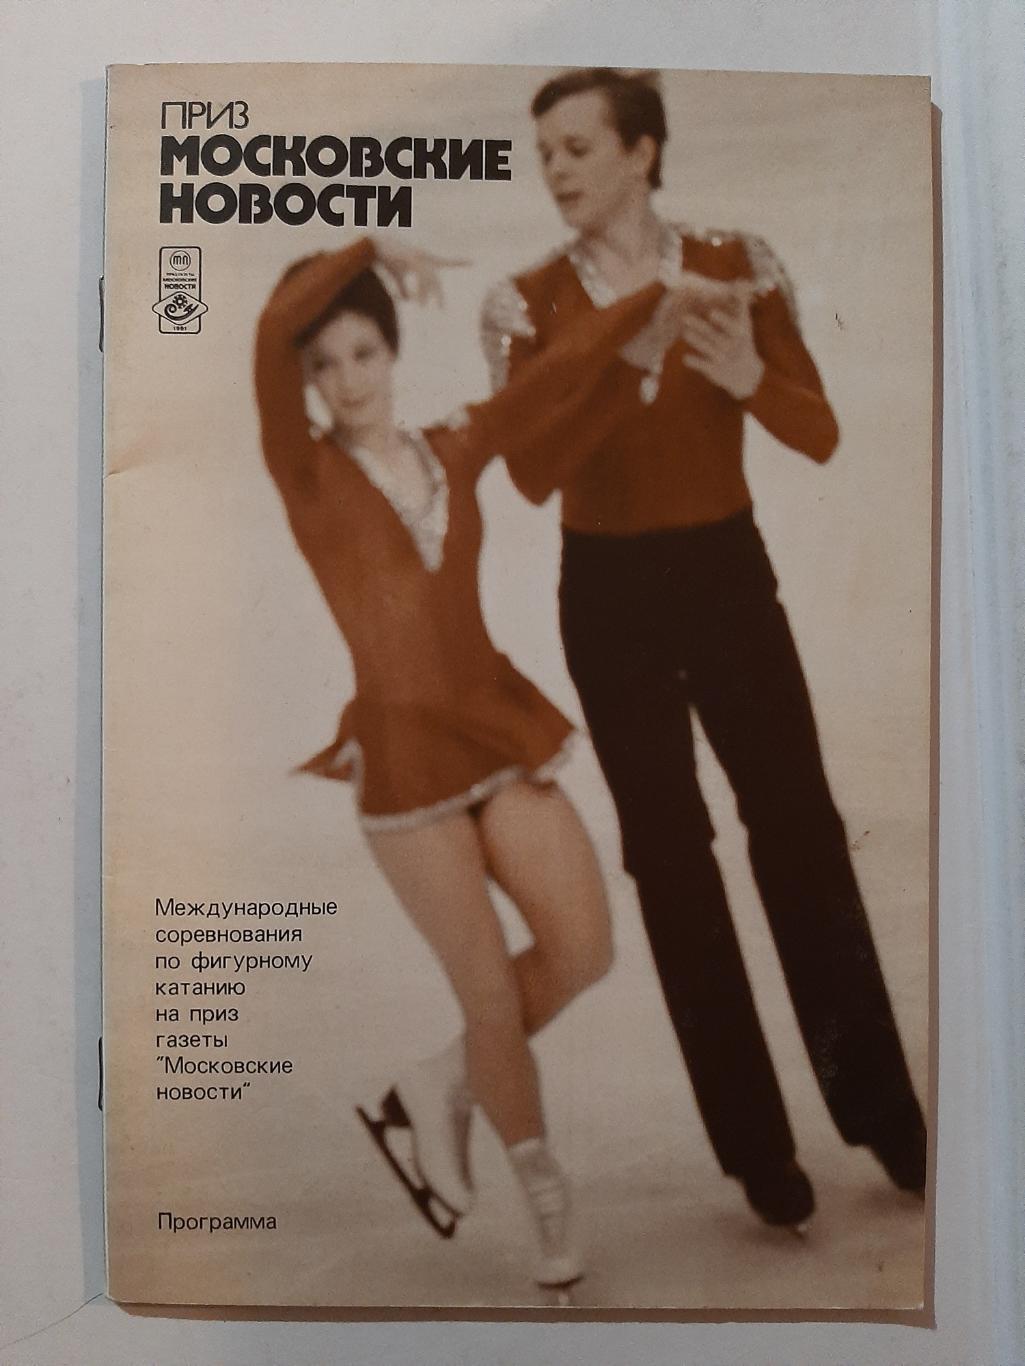 Московские новости. Фигурное катание. Программа 1981